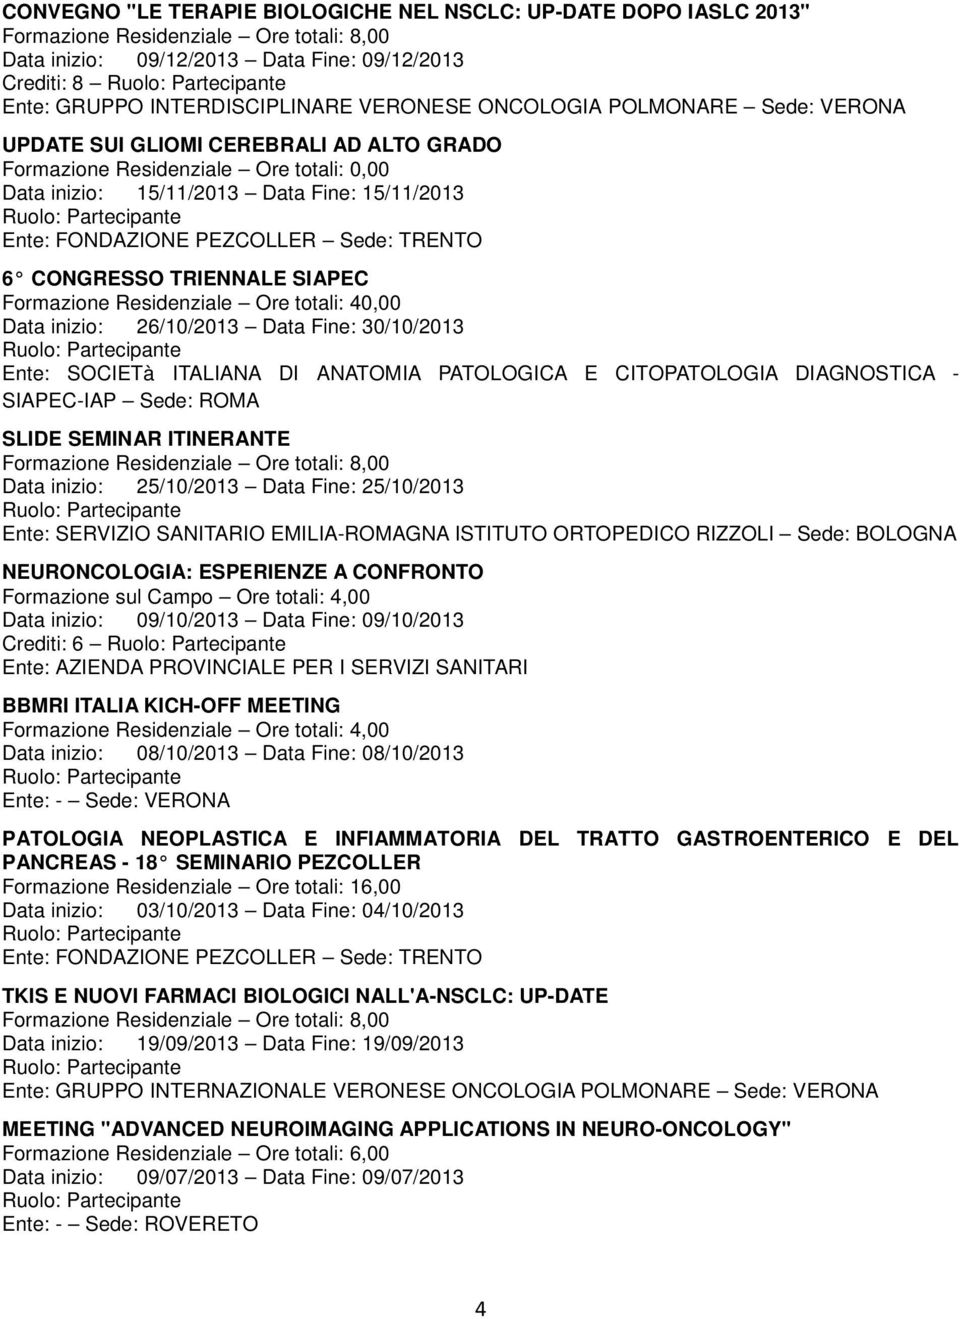 Formazione Residenziale Ore totali: 40,00 Data inizio: 26/10/2013 Data Fine: 30/10/2013 Ente: SOCIETà ITALIANA DI ANATOMIA PATOLOGICA E CITOPATOLOGIA DIAGNOSTICA - SIAPEC-IAP Sede: ROMA SLIDE SEMINAR